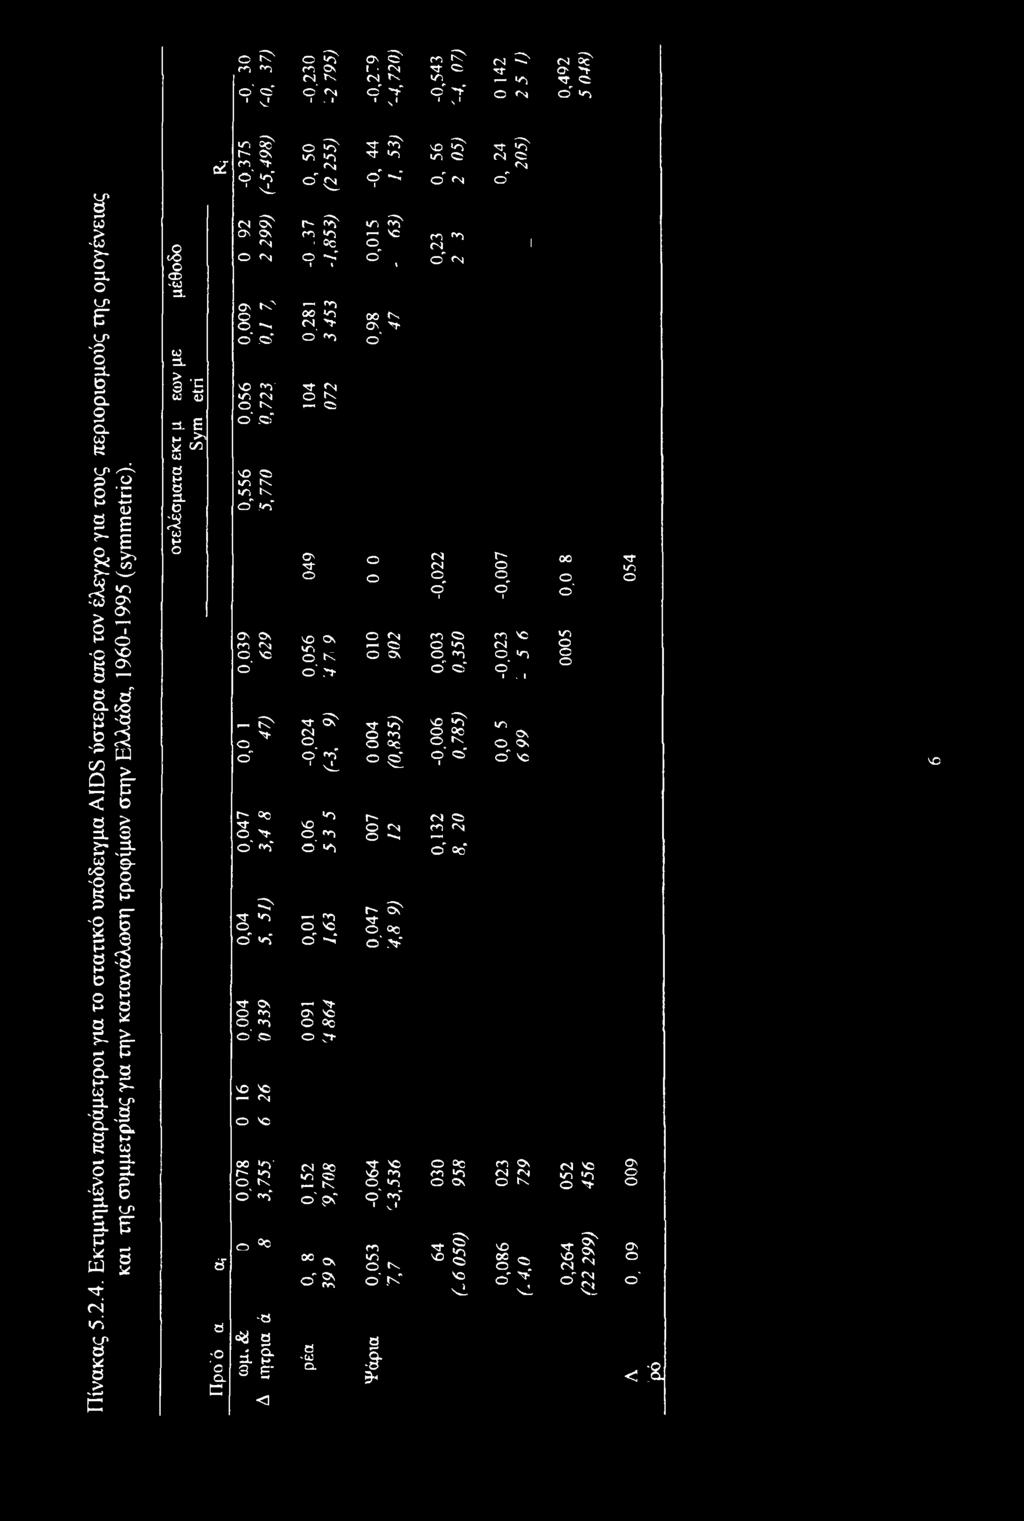 Εκτιμημένοι παράμετροι για το στατικό υπόδειγμα AIDS ύστερα από τον έλεγχο για τους περιορισμούς της ομογένειας και της συμμετρίας για την κατανάλωση τροφίμων στην Ελλάδα, 1960-1995 (symmetric).